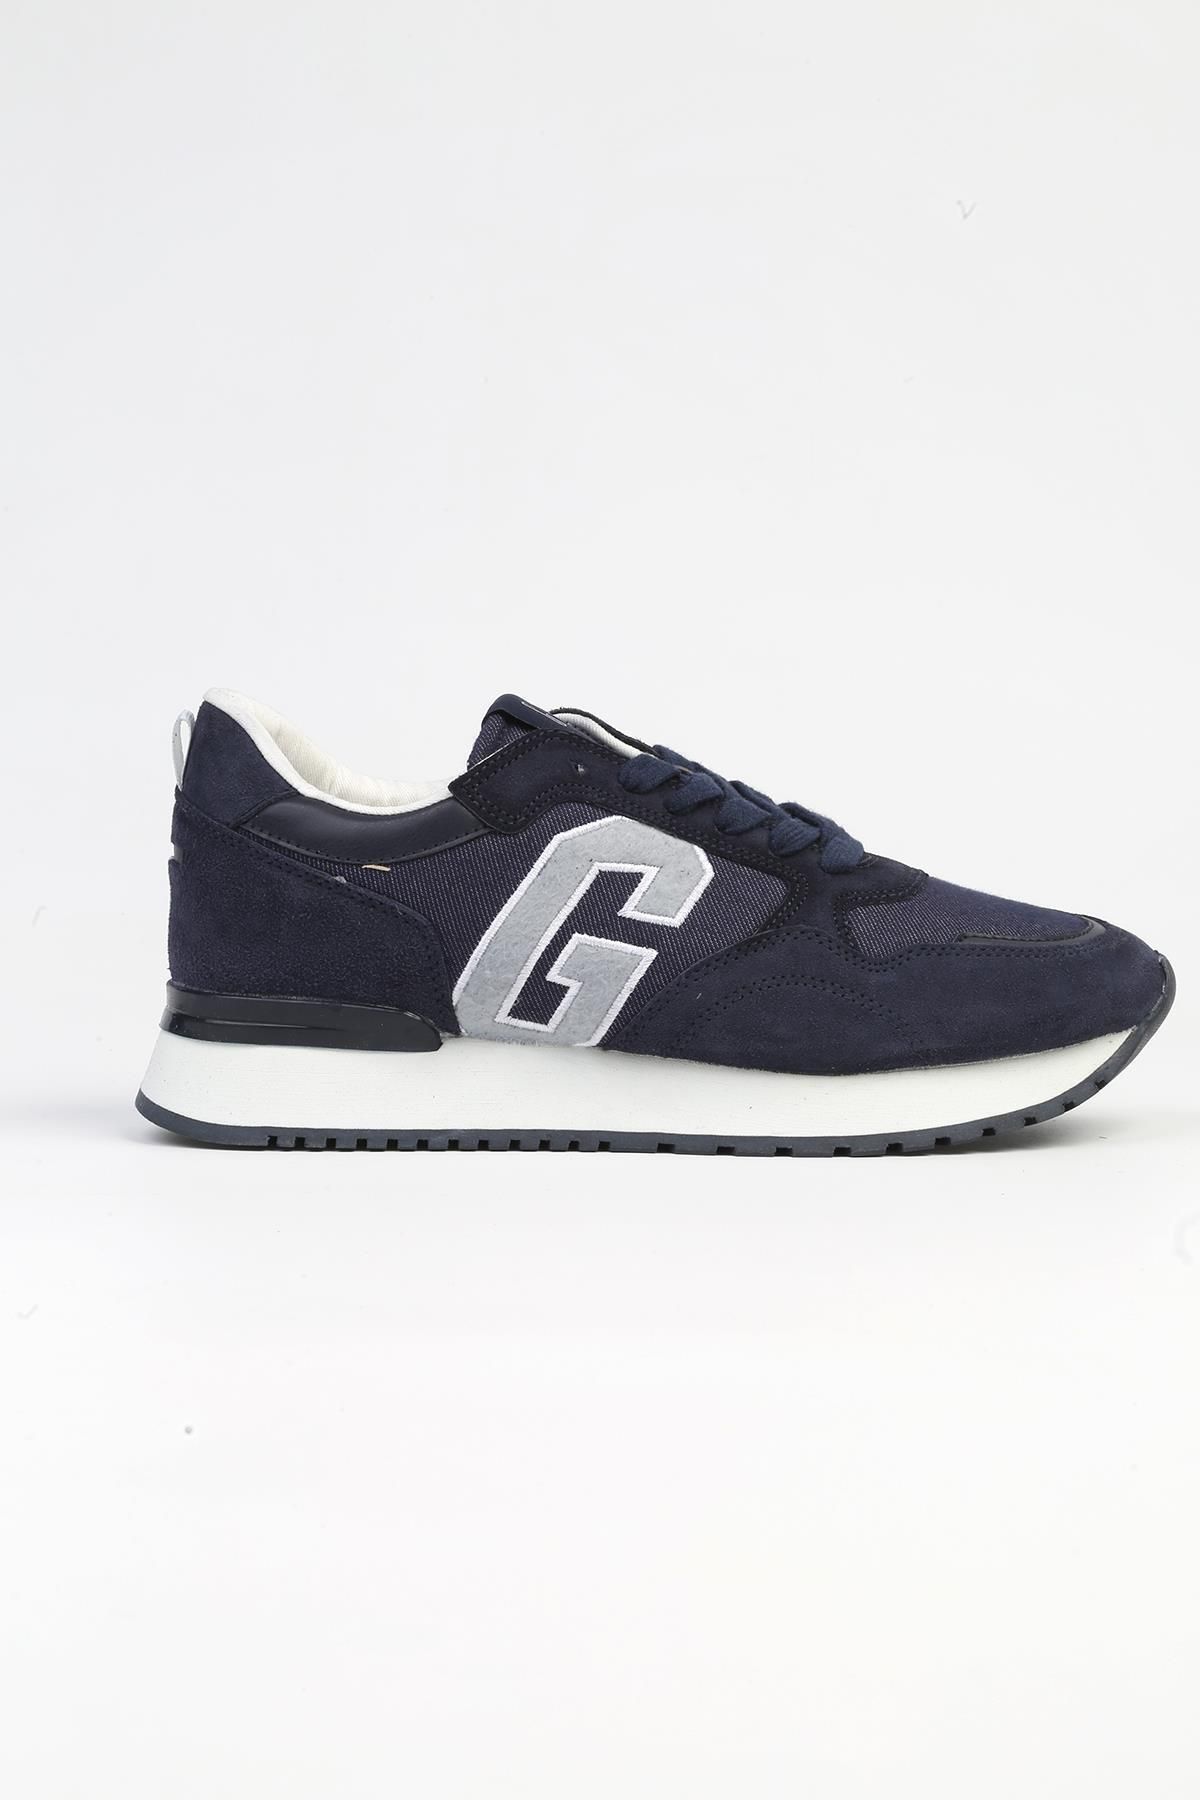 GAP ® | GP-1073 Kot Lacivert-Erkek Spor Ayakkabı